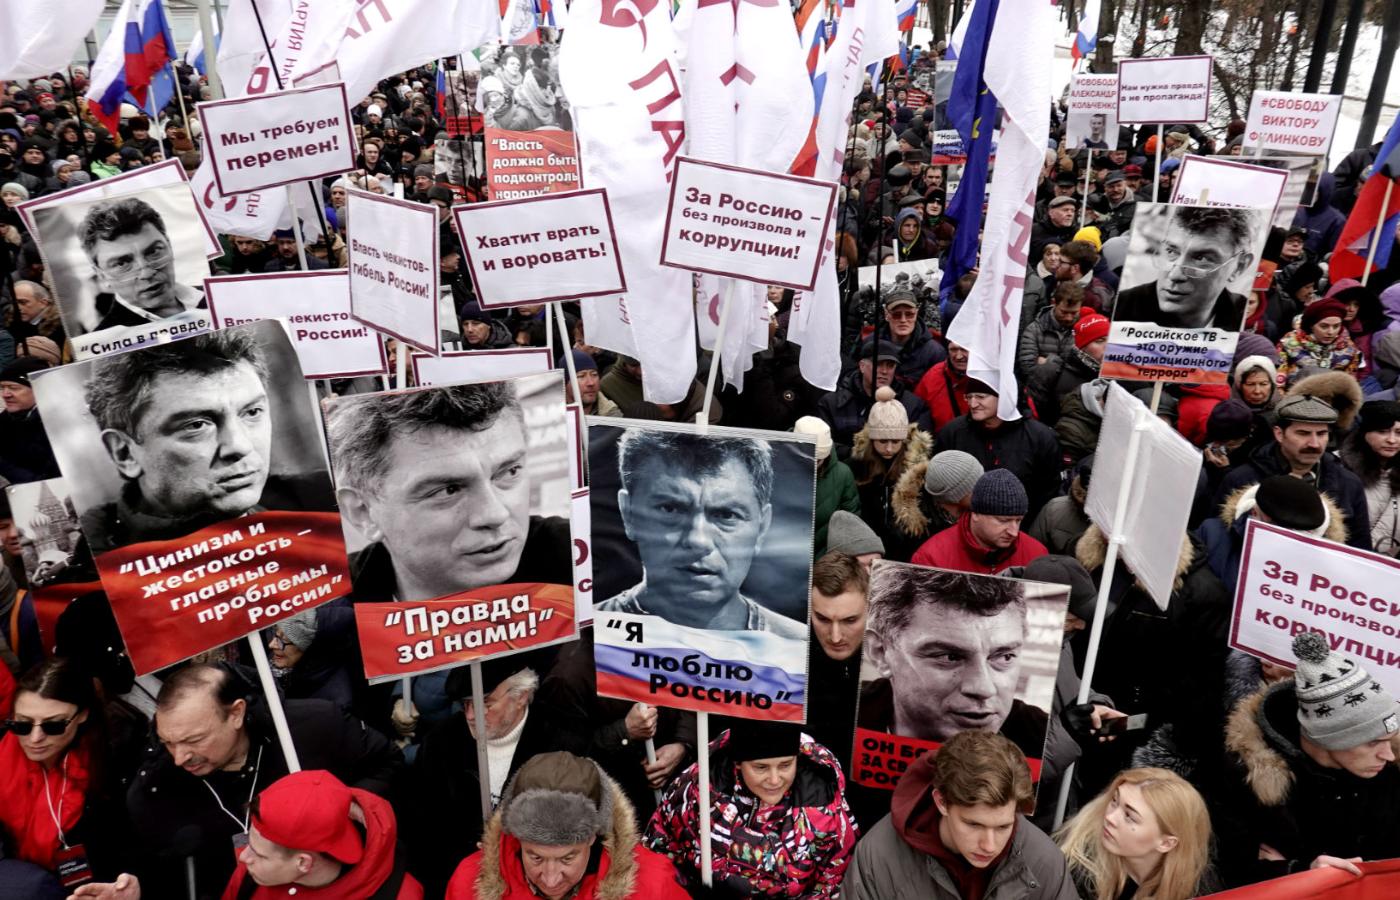 Wiec pamięci Borysa Niemcowa w Moskwie, 2019 r.